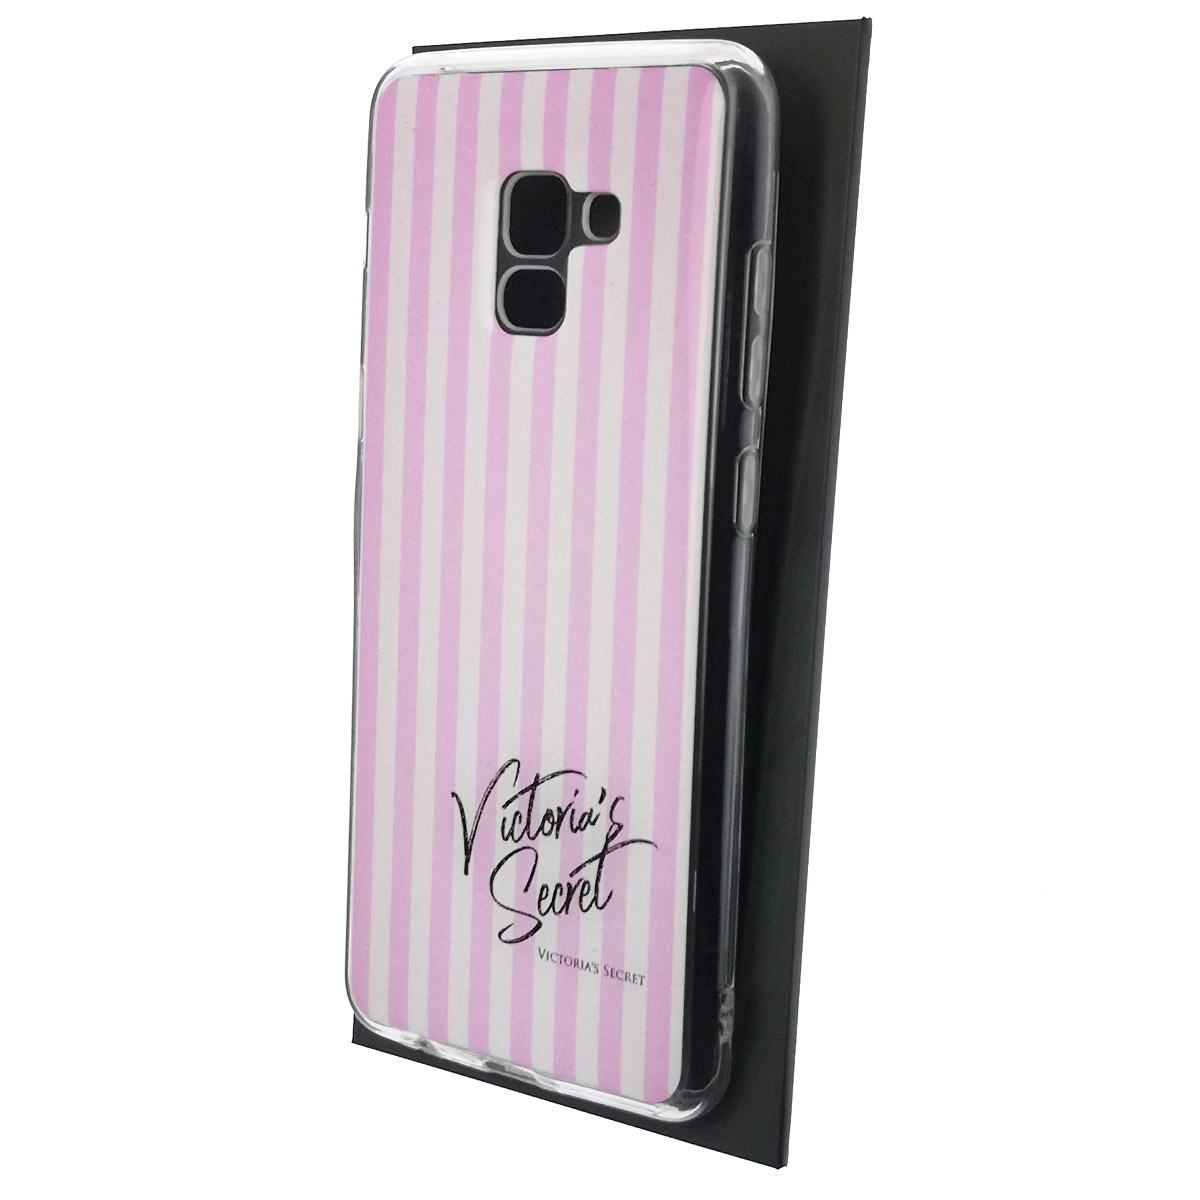 Чехол накладка для SAMSUNG Galaxy A8 Plus (SM-A730), силикон, глянцевый, блестки, рисунок Victoria Secret